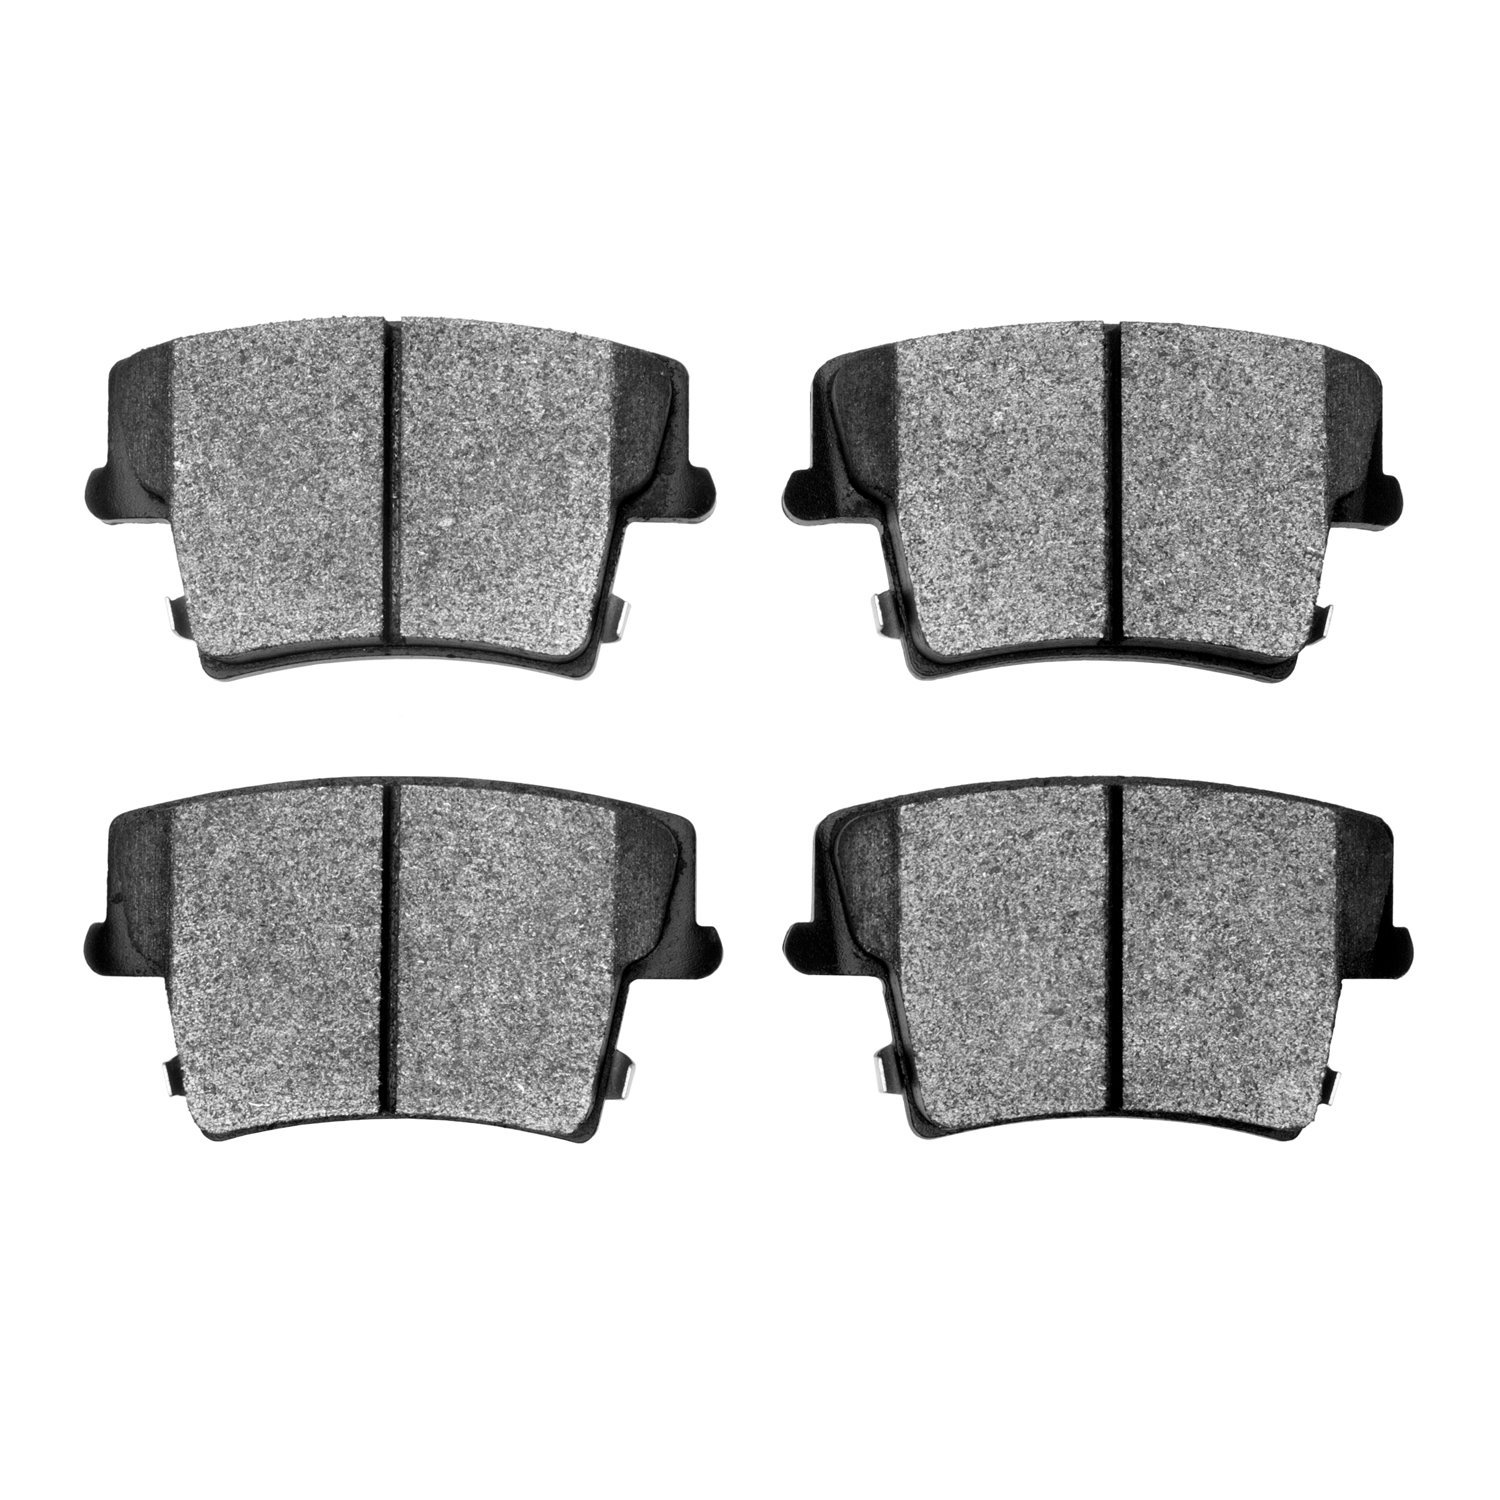 1214-1057-00 Heavy-Duty Semi-Metallic Brake Pads, Fits Select Mopar, Position: Rear